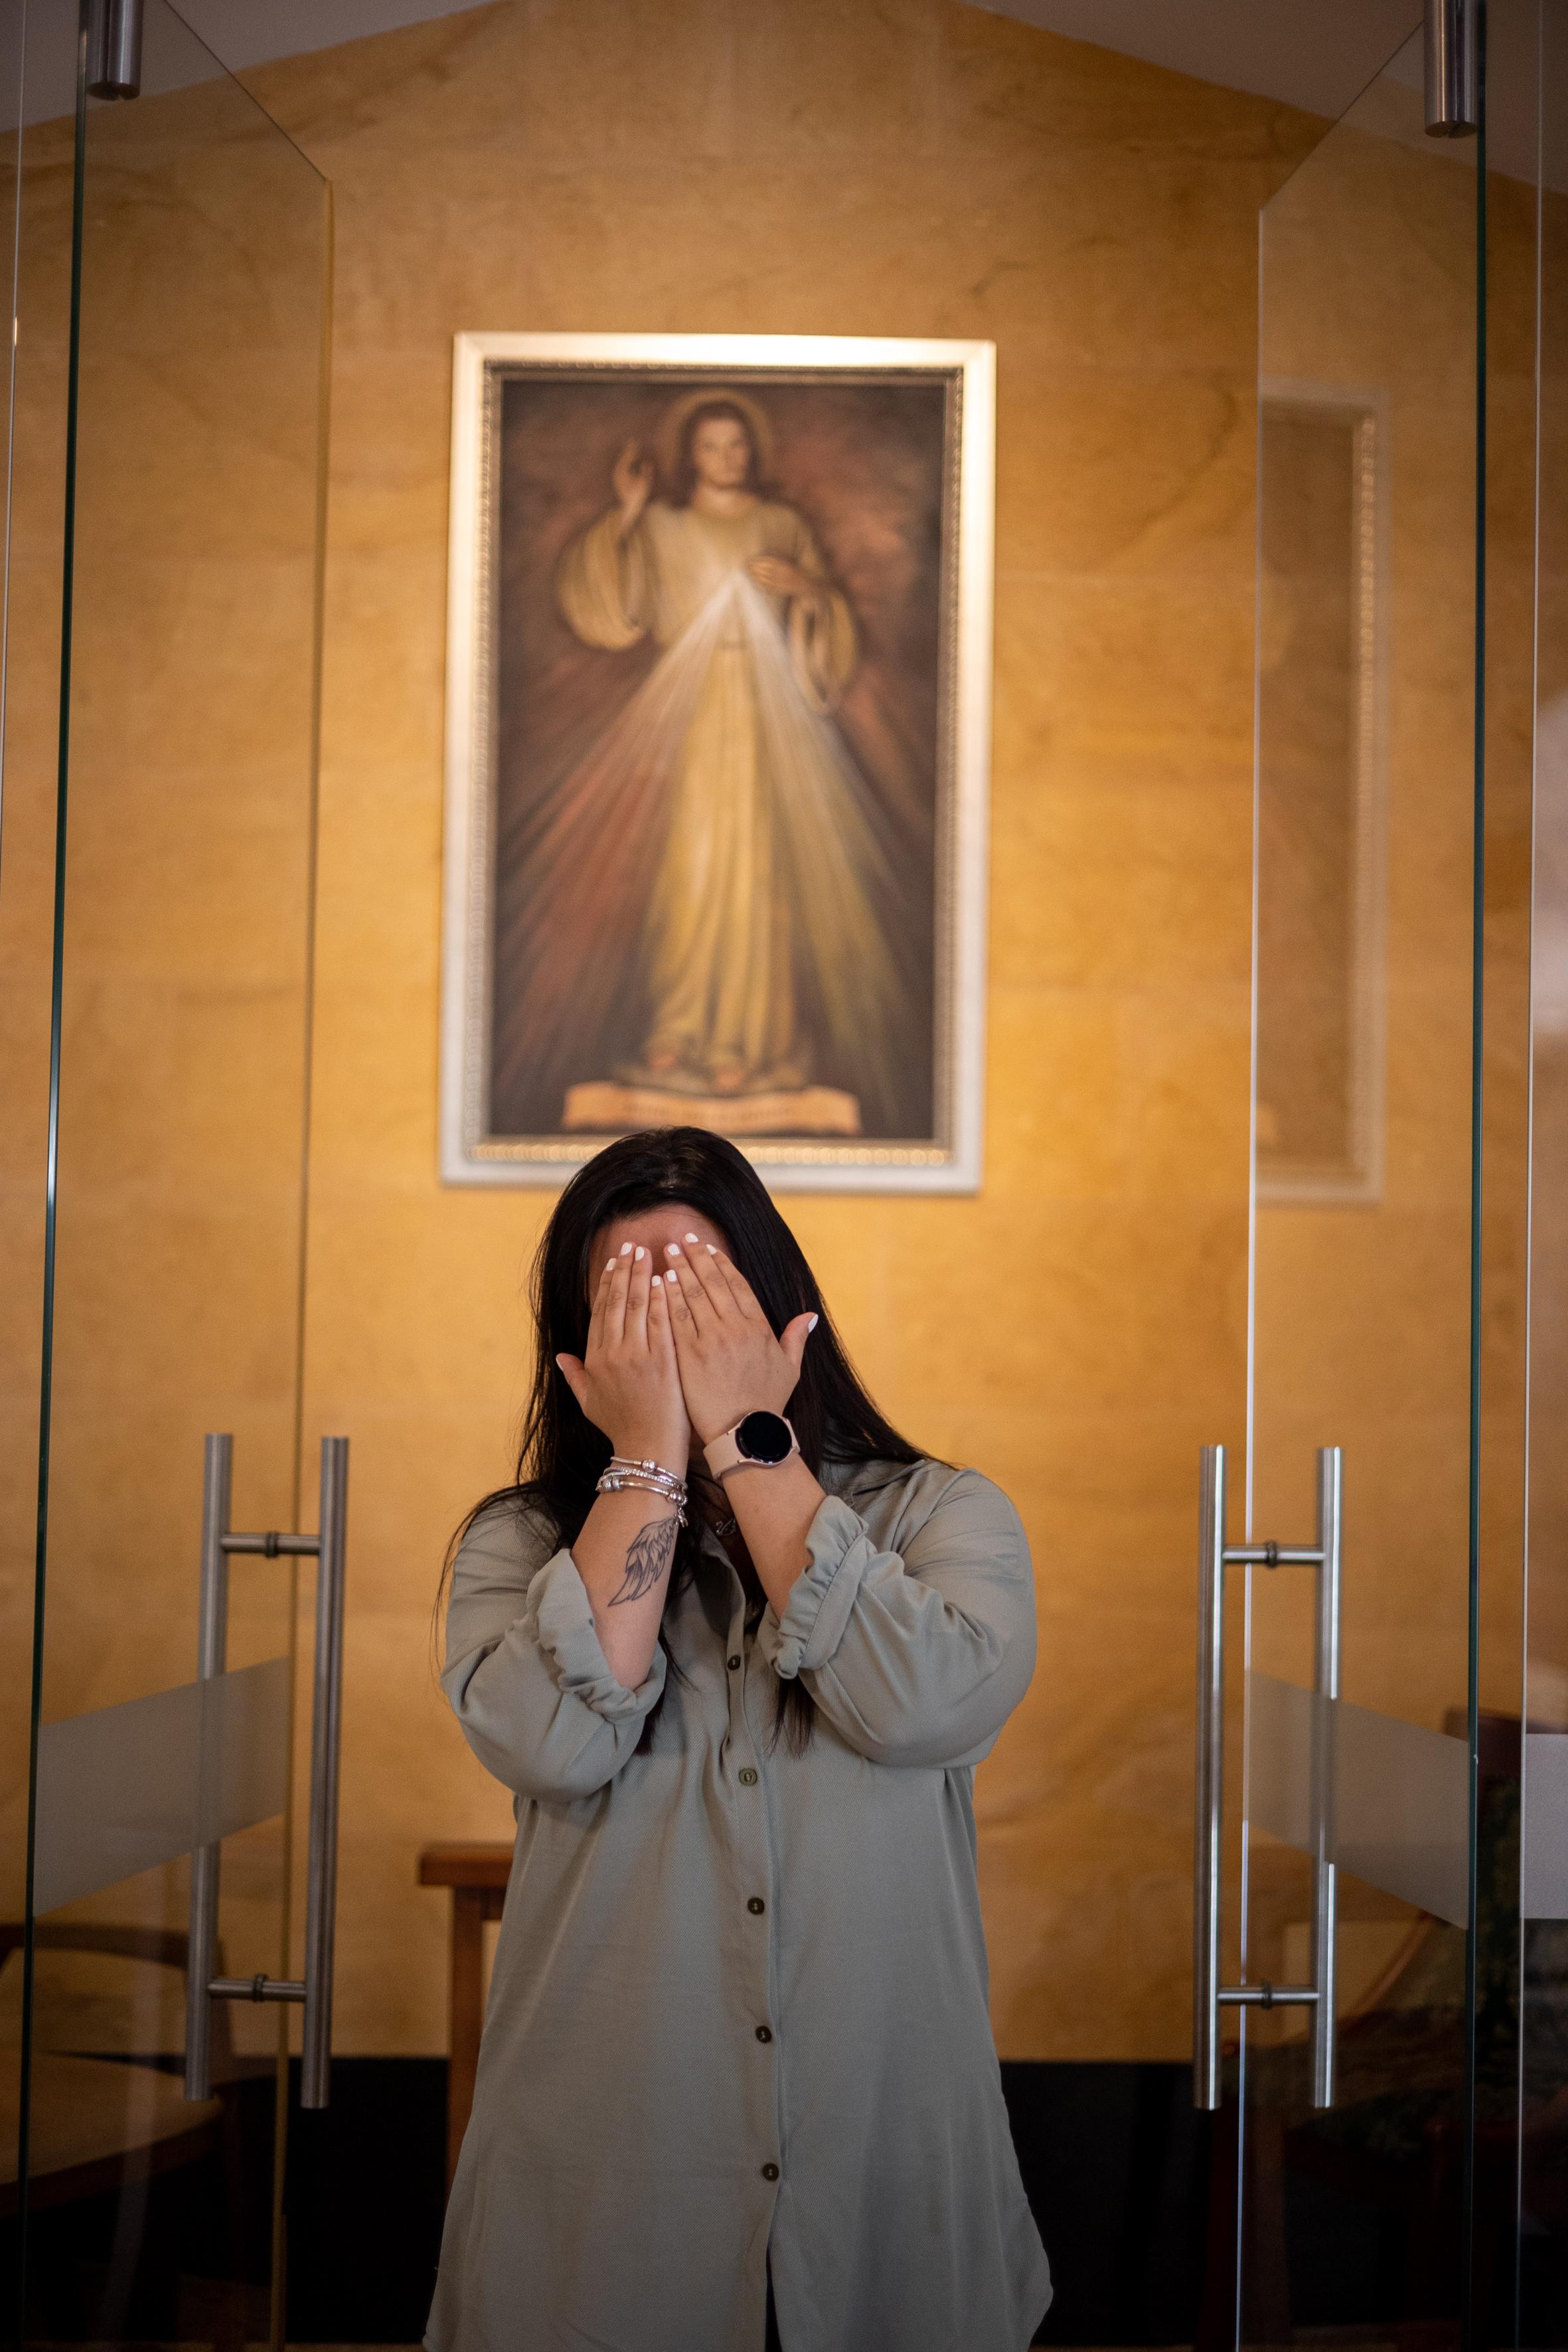 Natalia Natalia en la parroquia Santa Gertrudis en Envigado, cubre su rostro con las manos para proteger su identidad